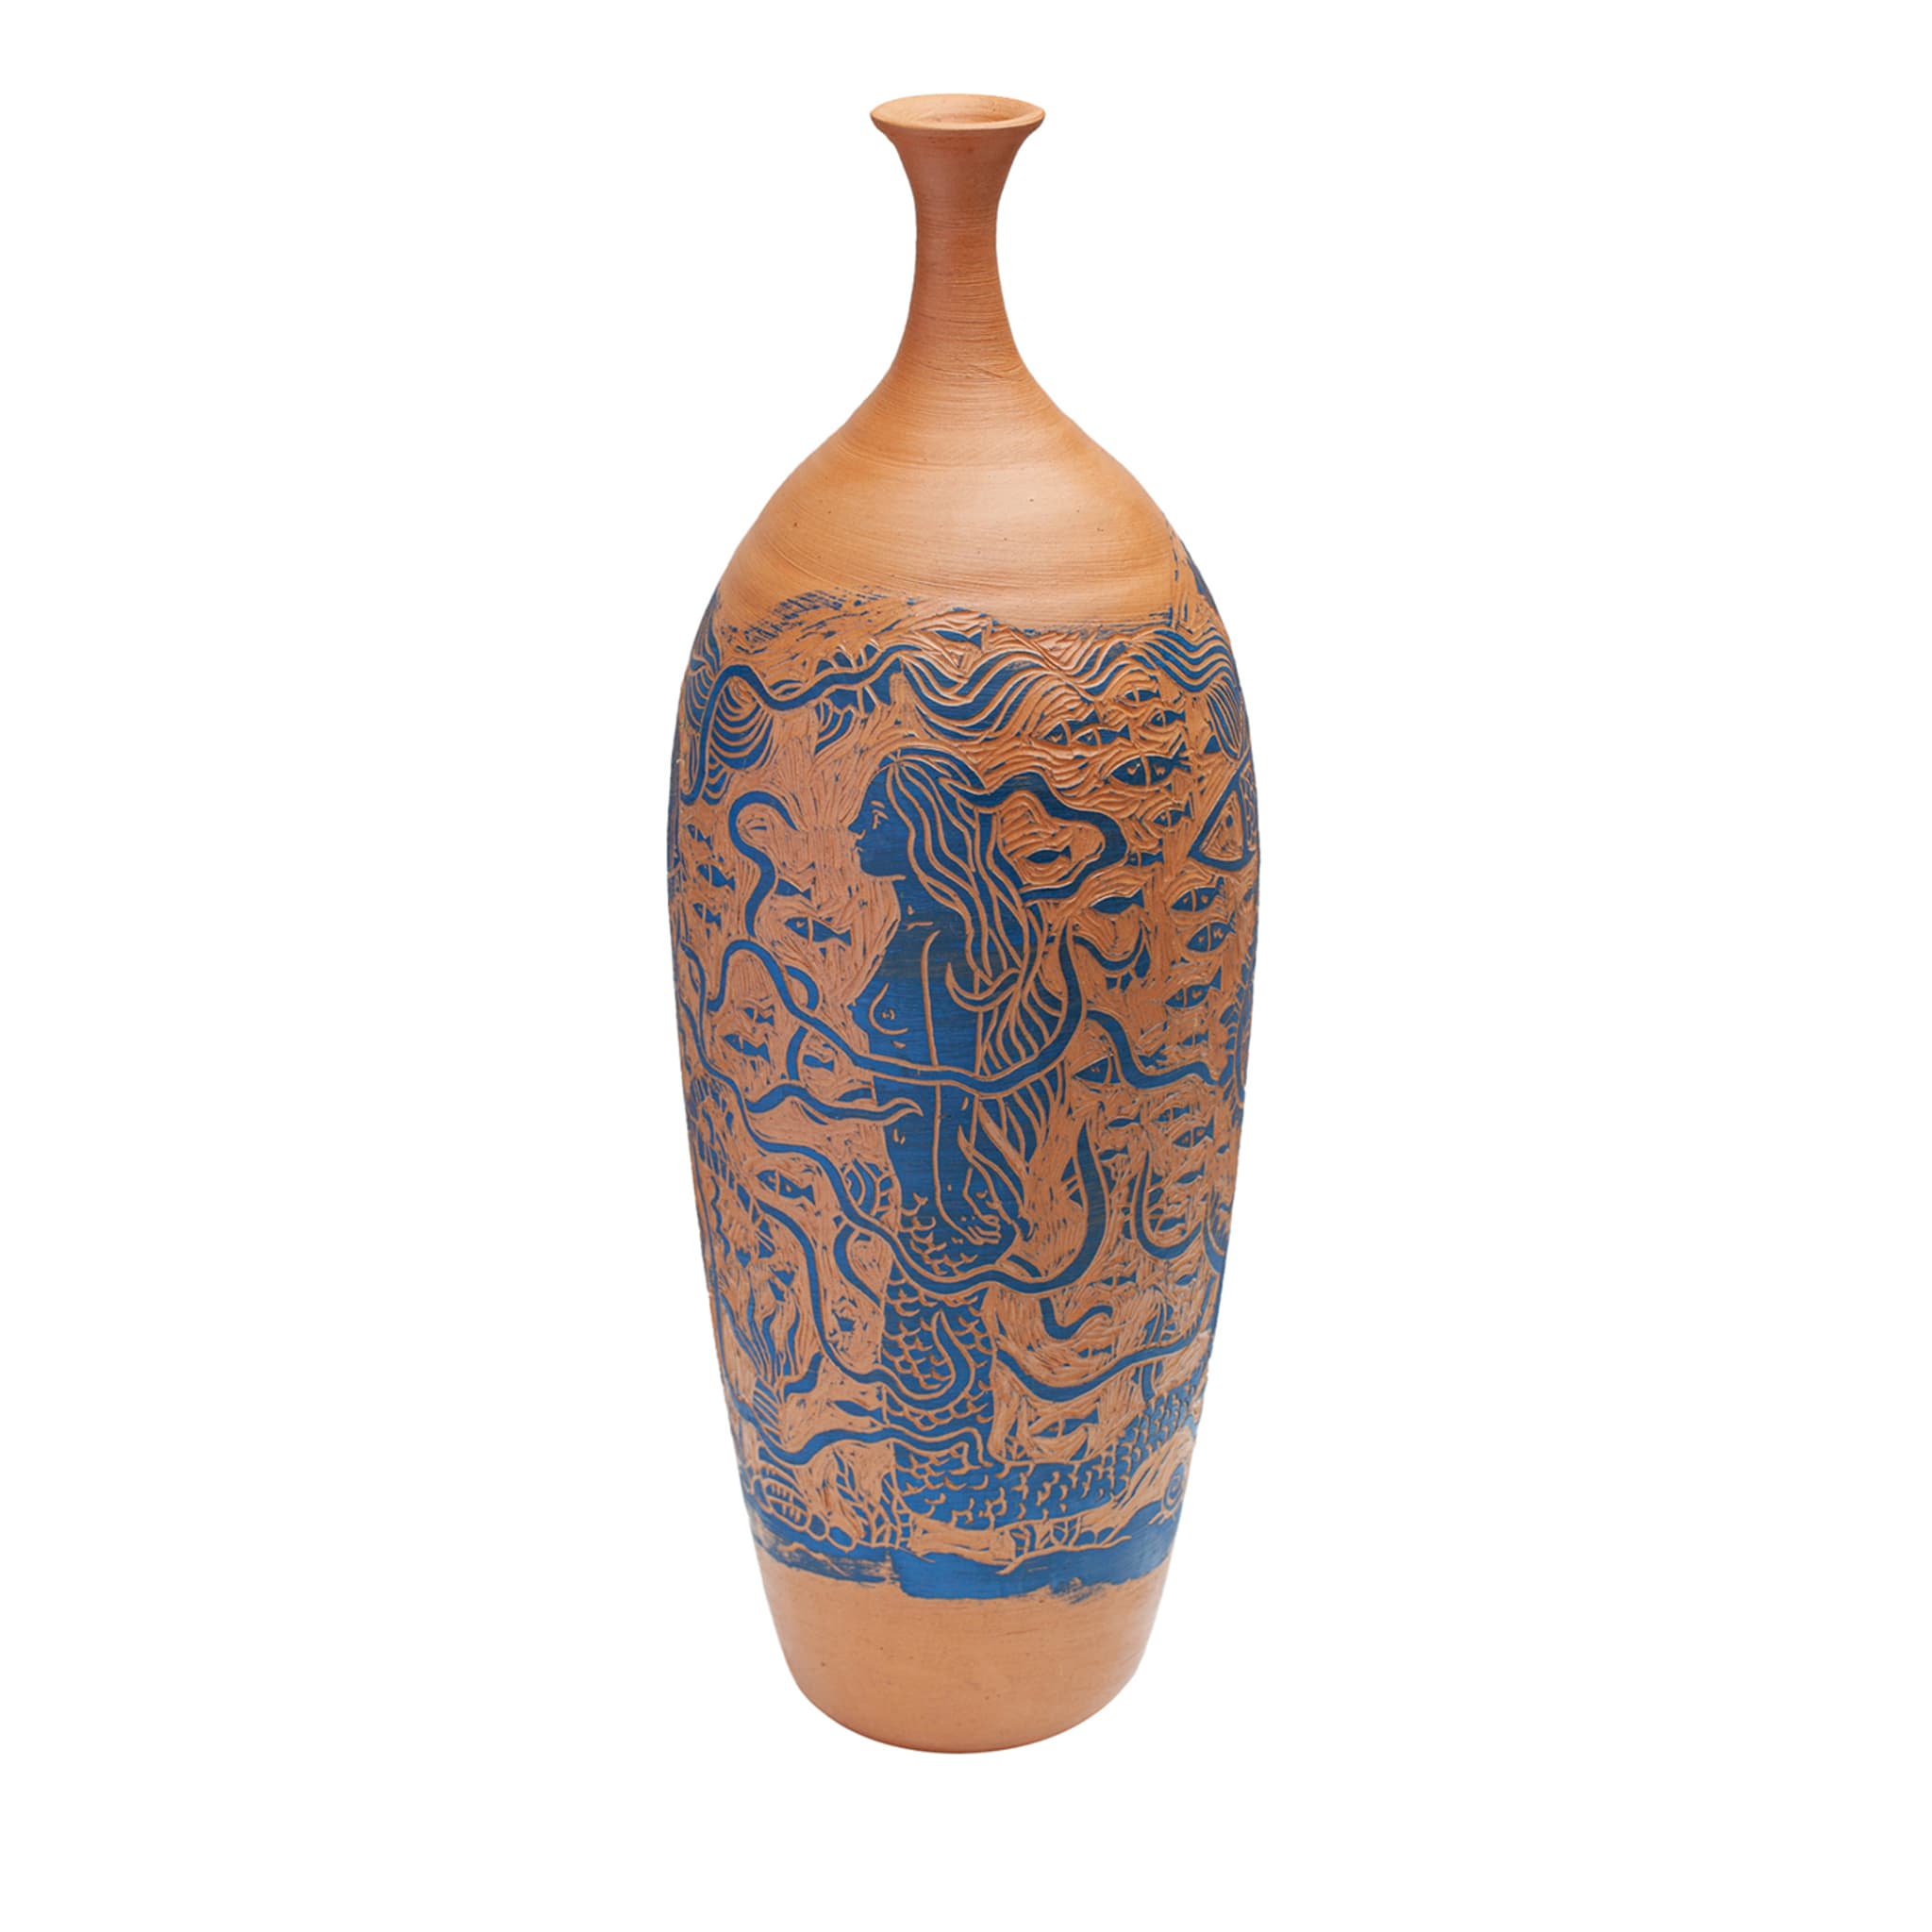 Ipnosi Siren Vase by Clara Holt and Chiara Zoppei - Main view